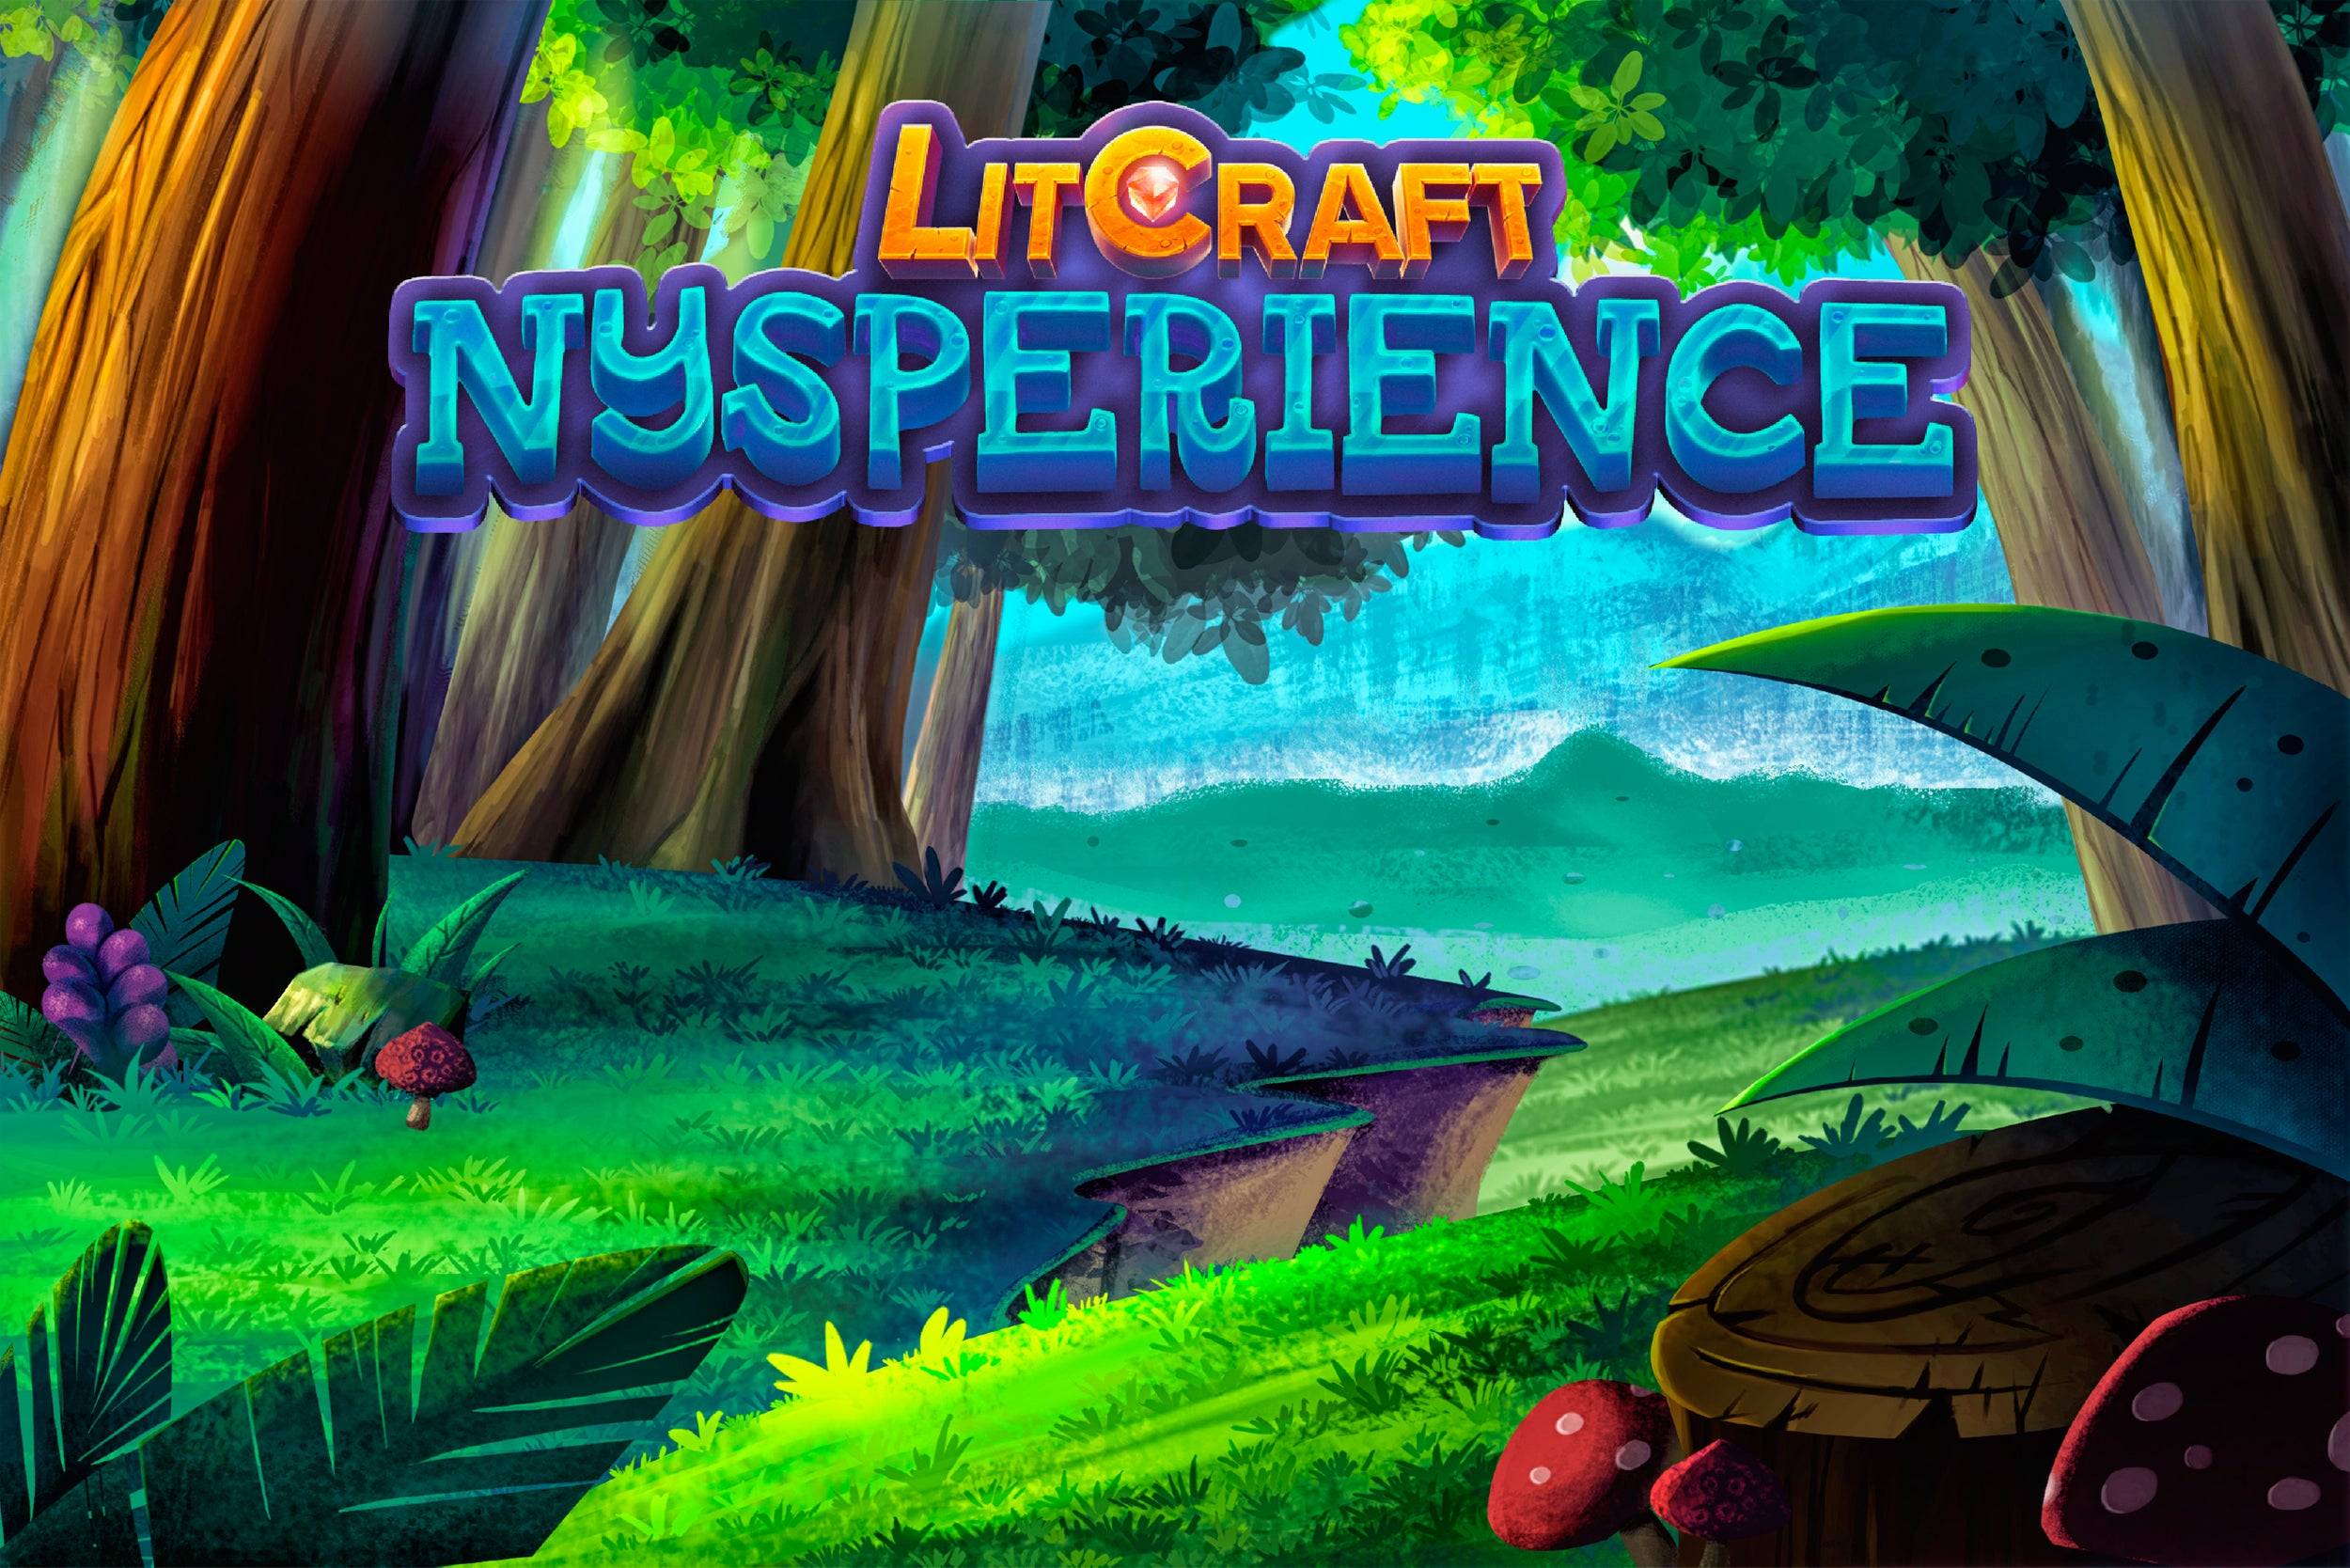 LitCraft: Nysperience - Análise do jogo